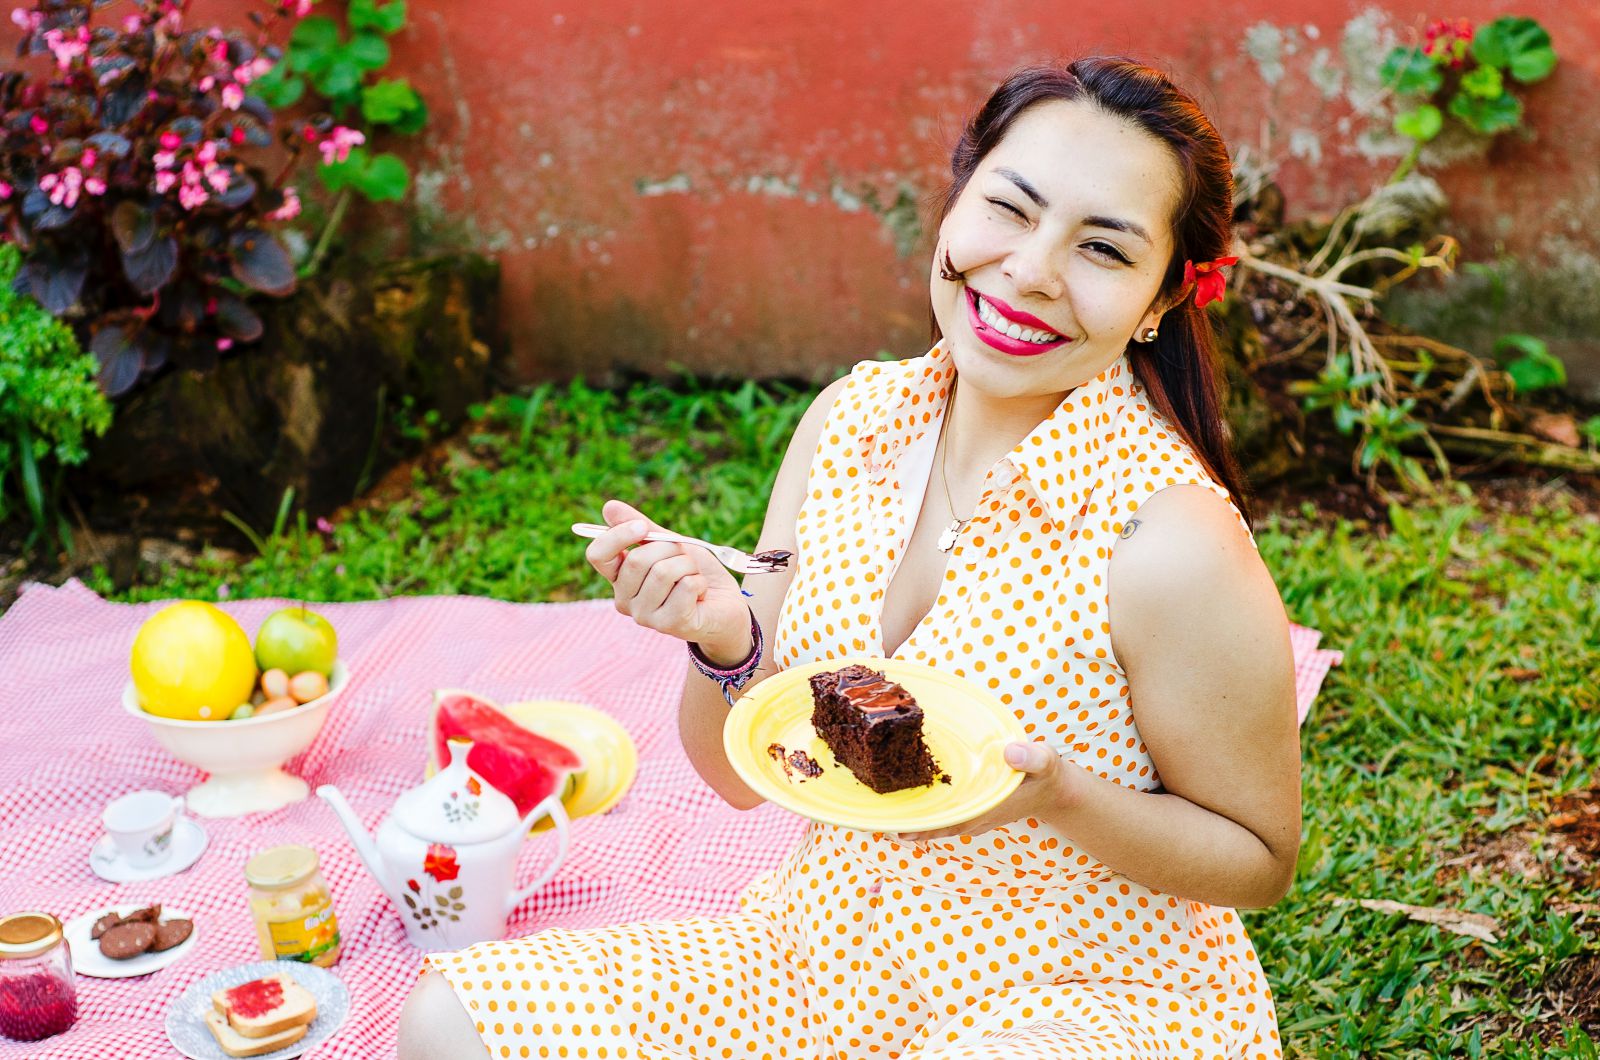 Mulher comendo um bolo de chocolate ao ar livre, em um piquenique.